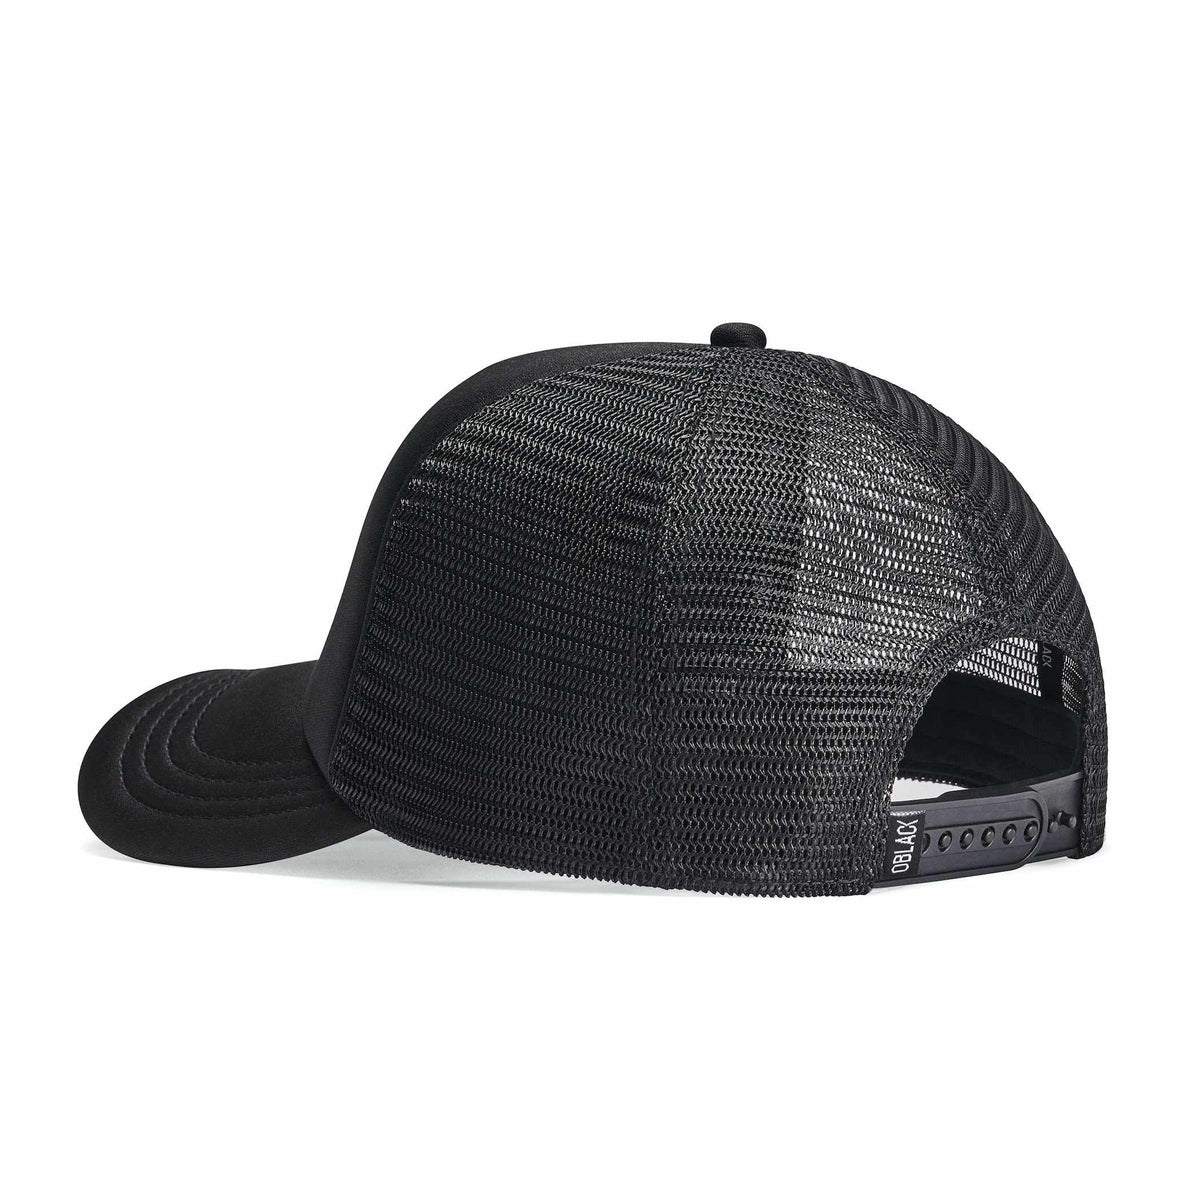 Trucker Caps - Buy Trucker Hats online | OBLACK CAPS – Oblack Caps